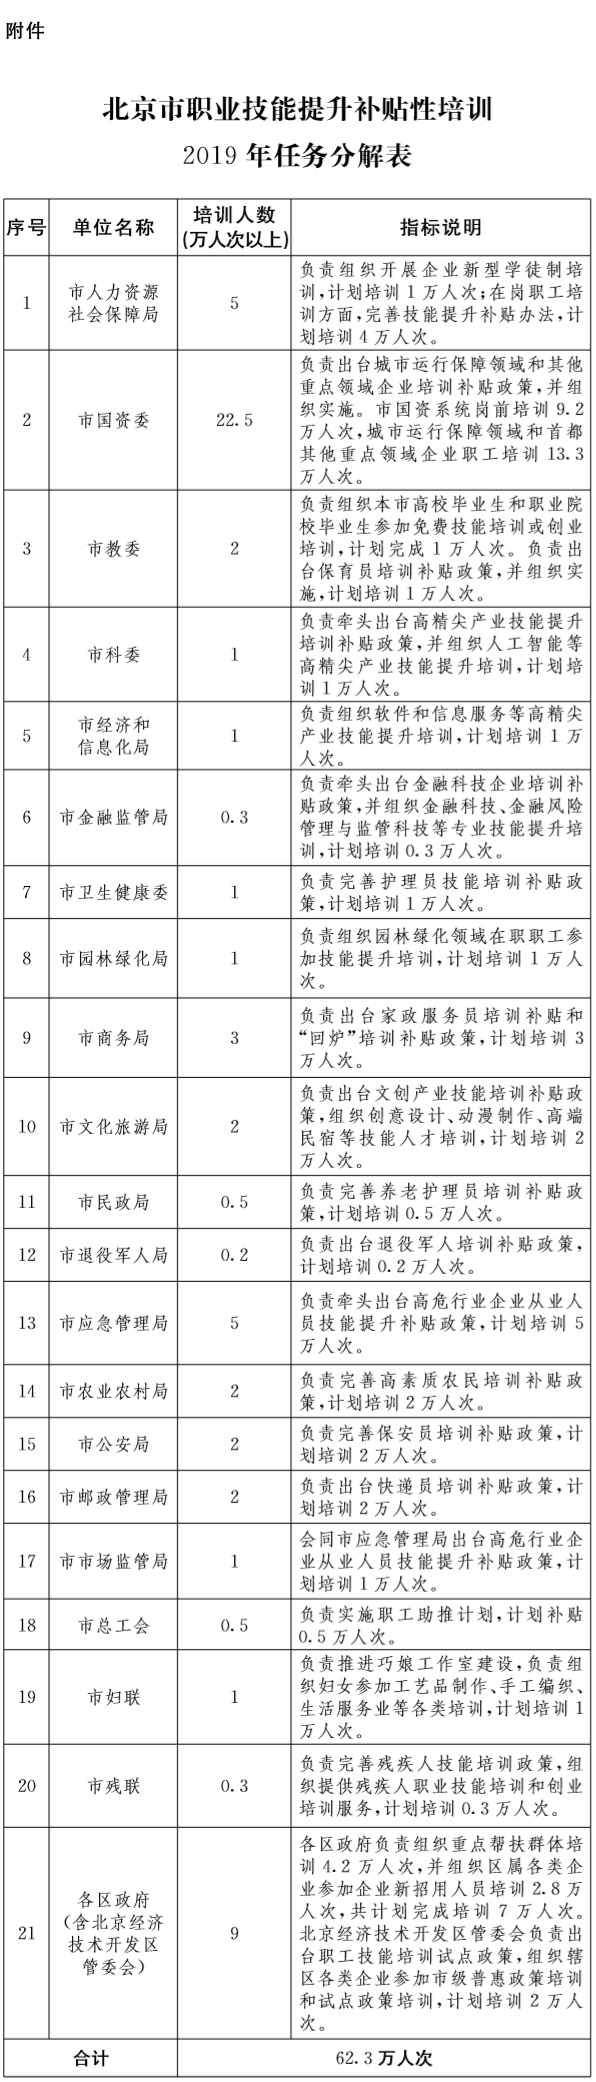 37-附件：北京市職業技能提升補貼性培訓2019年任務分解表.jpg